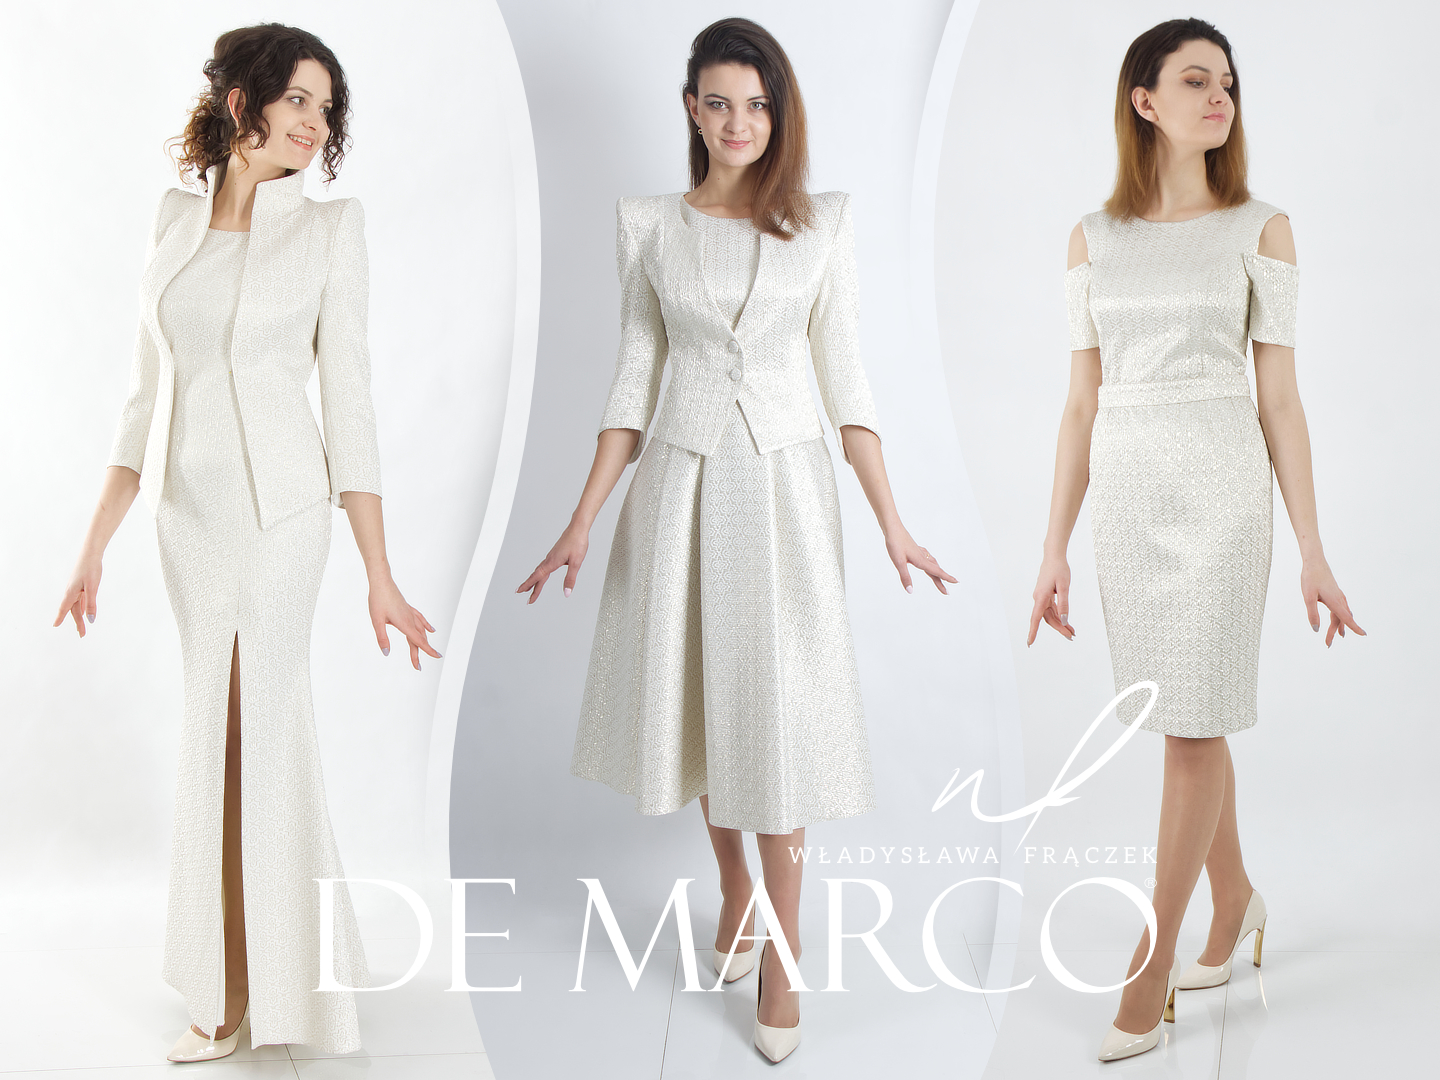 Ekskluzywna odzież damska producent De Marco. Luksusowe suknie dla matki weselnej na ślub jesienią i zimą.